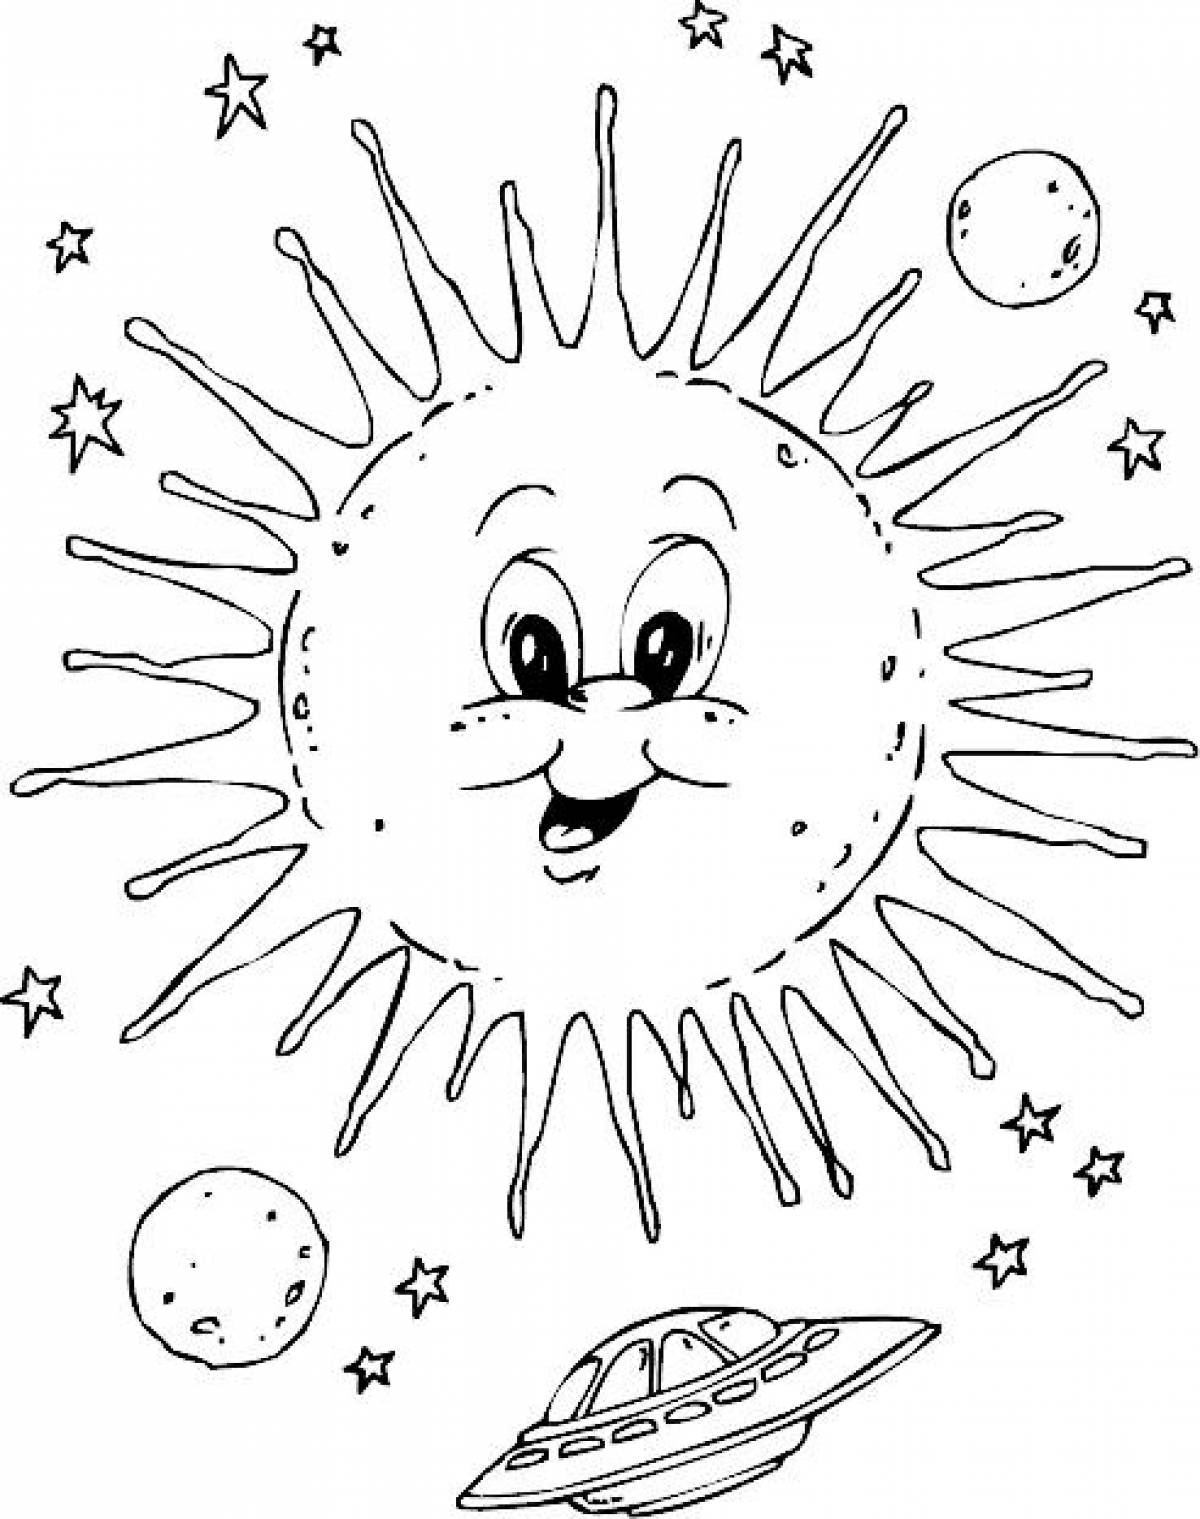 Планеты картинки для детей раскраски. Раскраска. В космосе. Космос раскраска для детей. Солнце раскраска. Солнышко раскраска для детей.